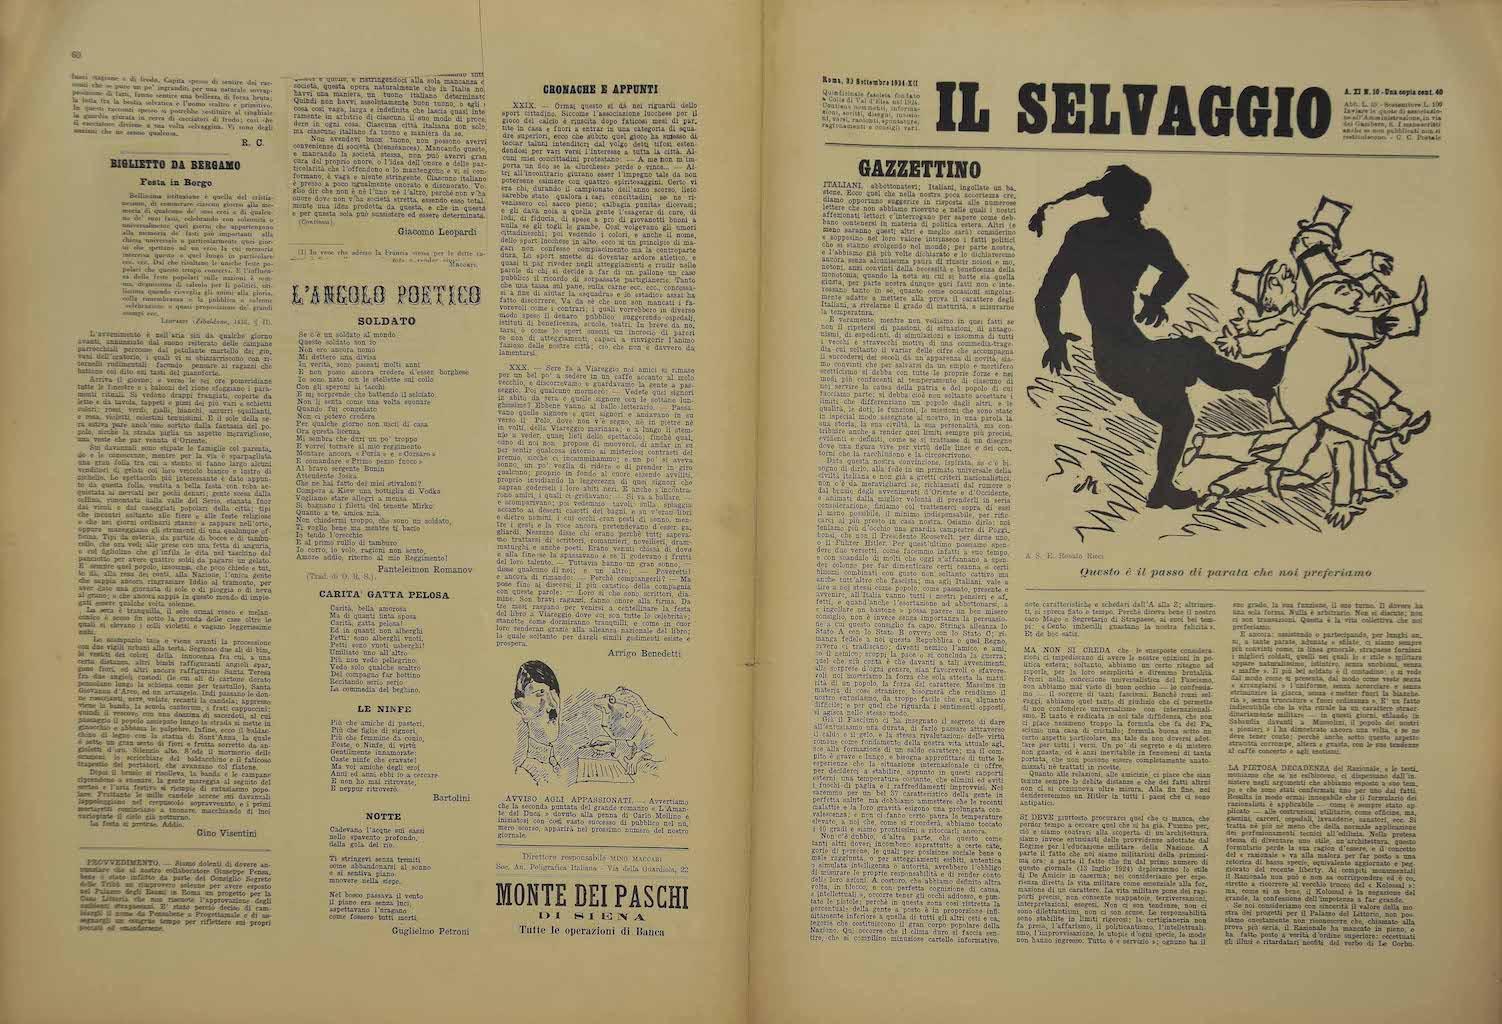 Il Selvaggio #10 - Art Magazine with Engravings by Mino Maccari - 1934